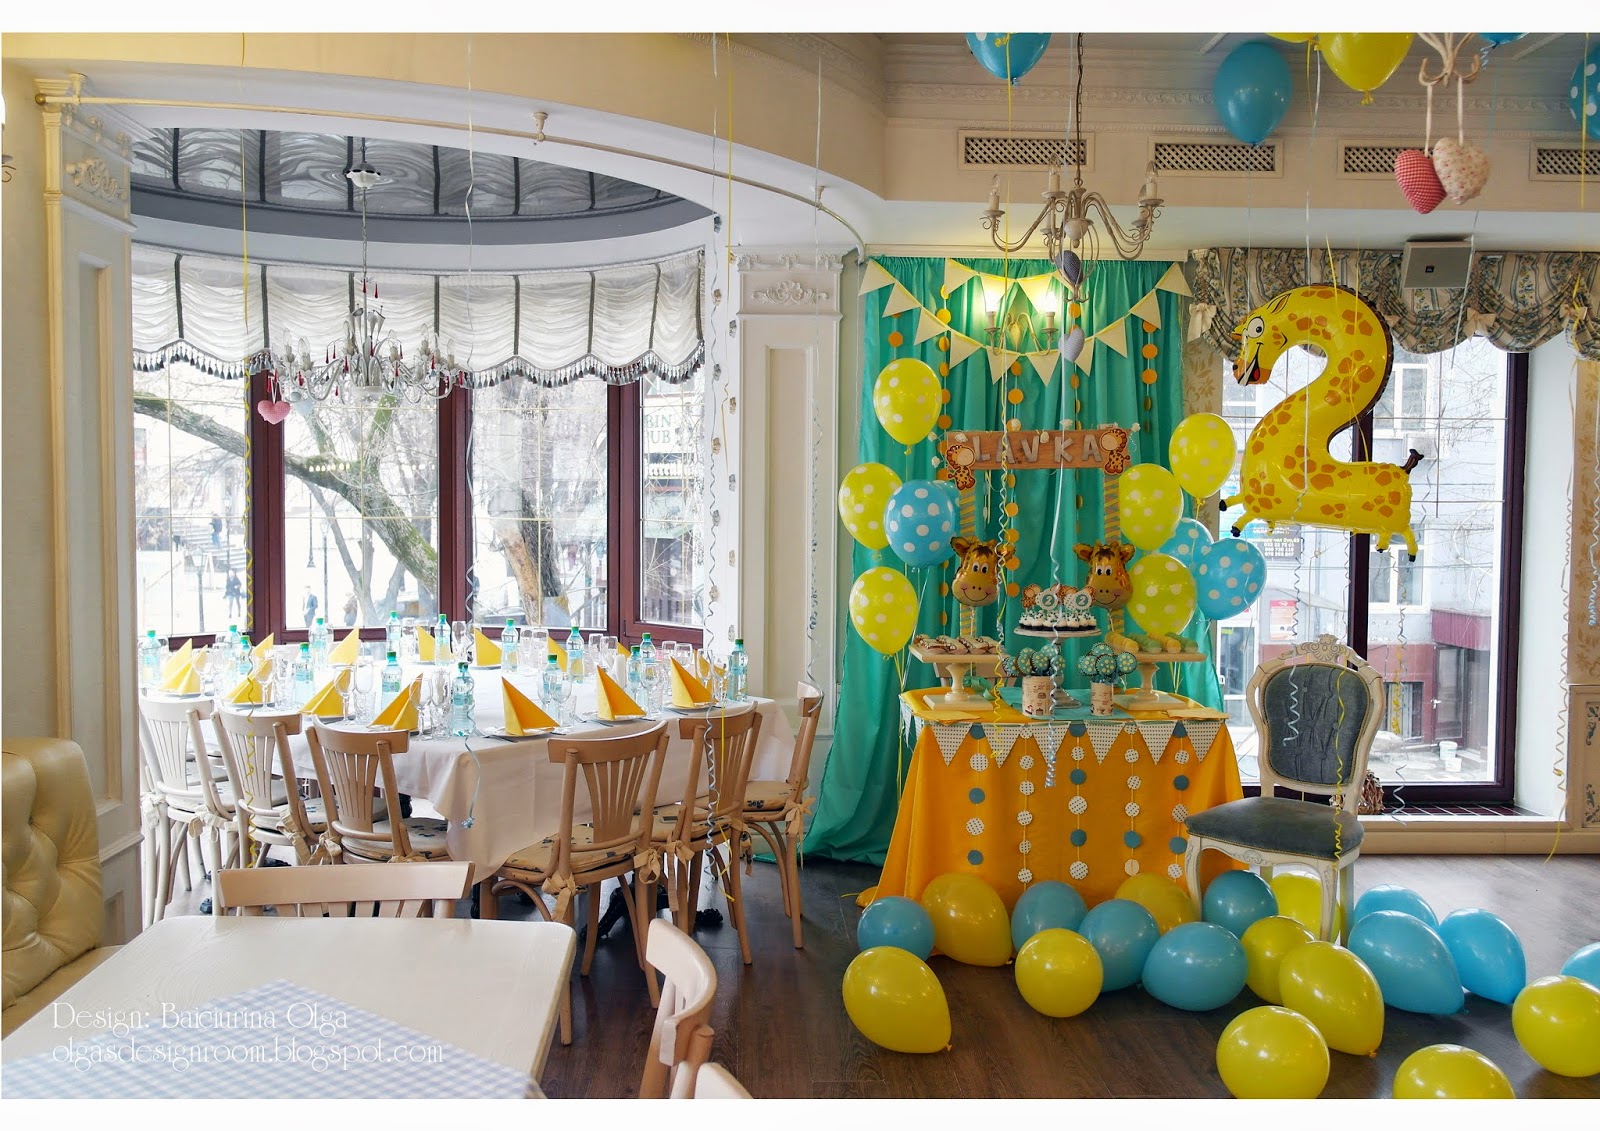 Olga Baiciurina. Decorațiuni pentru ziua de naștere a copilului - Giraffe birthday party theme!